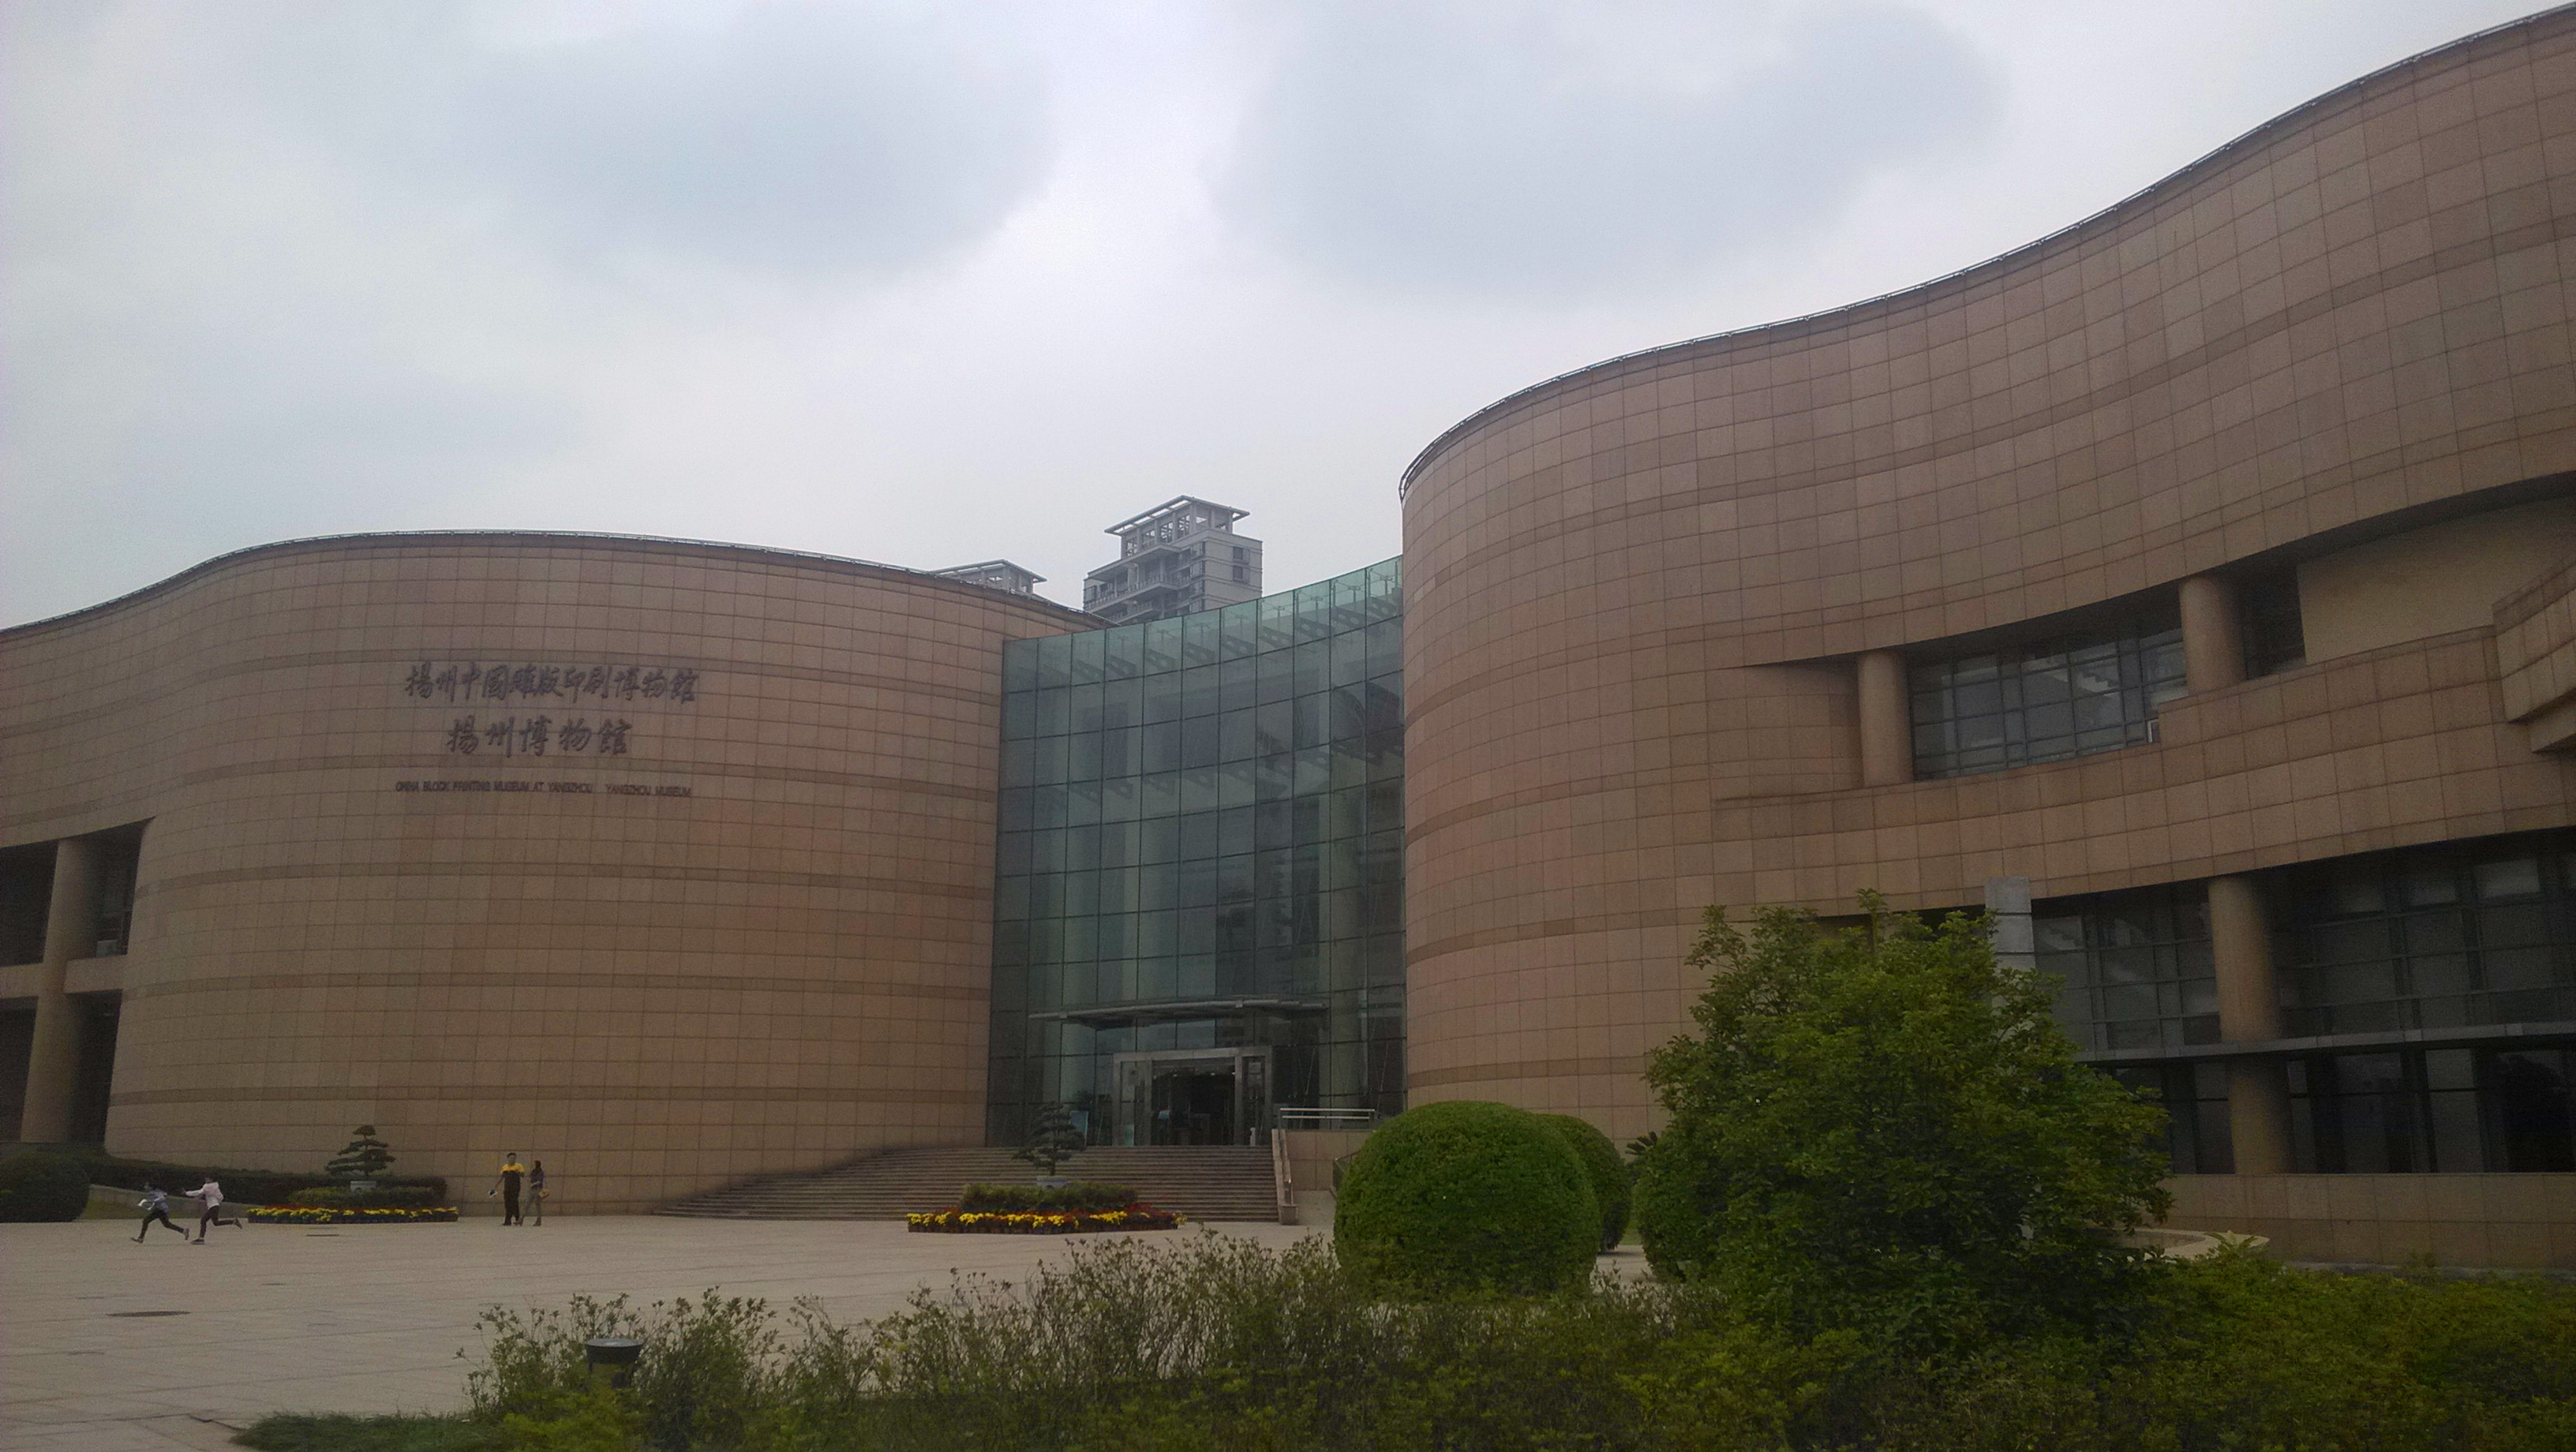 扬州双博馆:由扬州博物馆新馆和扬州中国雕版印刷博物馆组成.